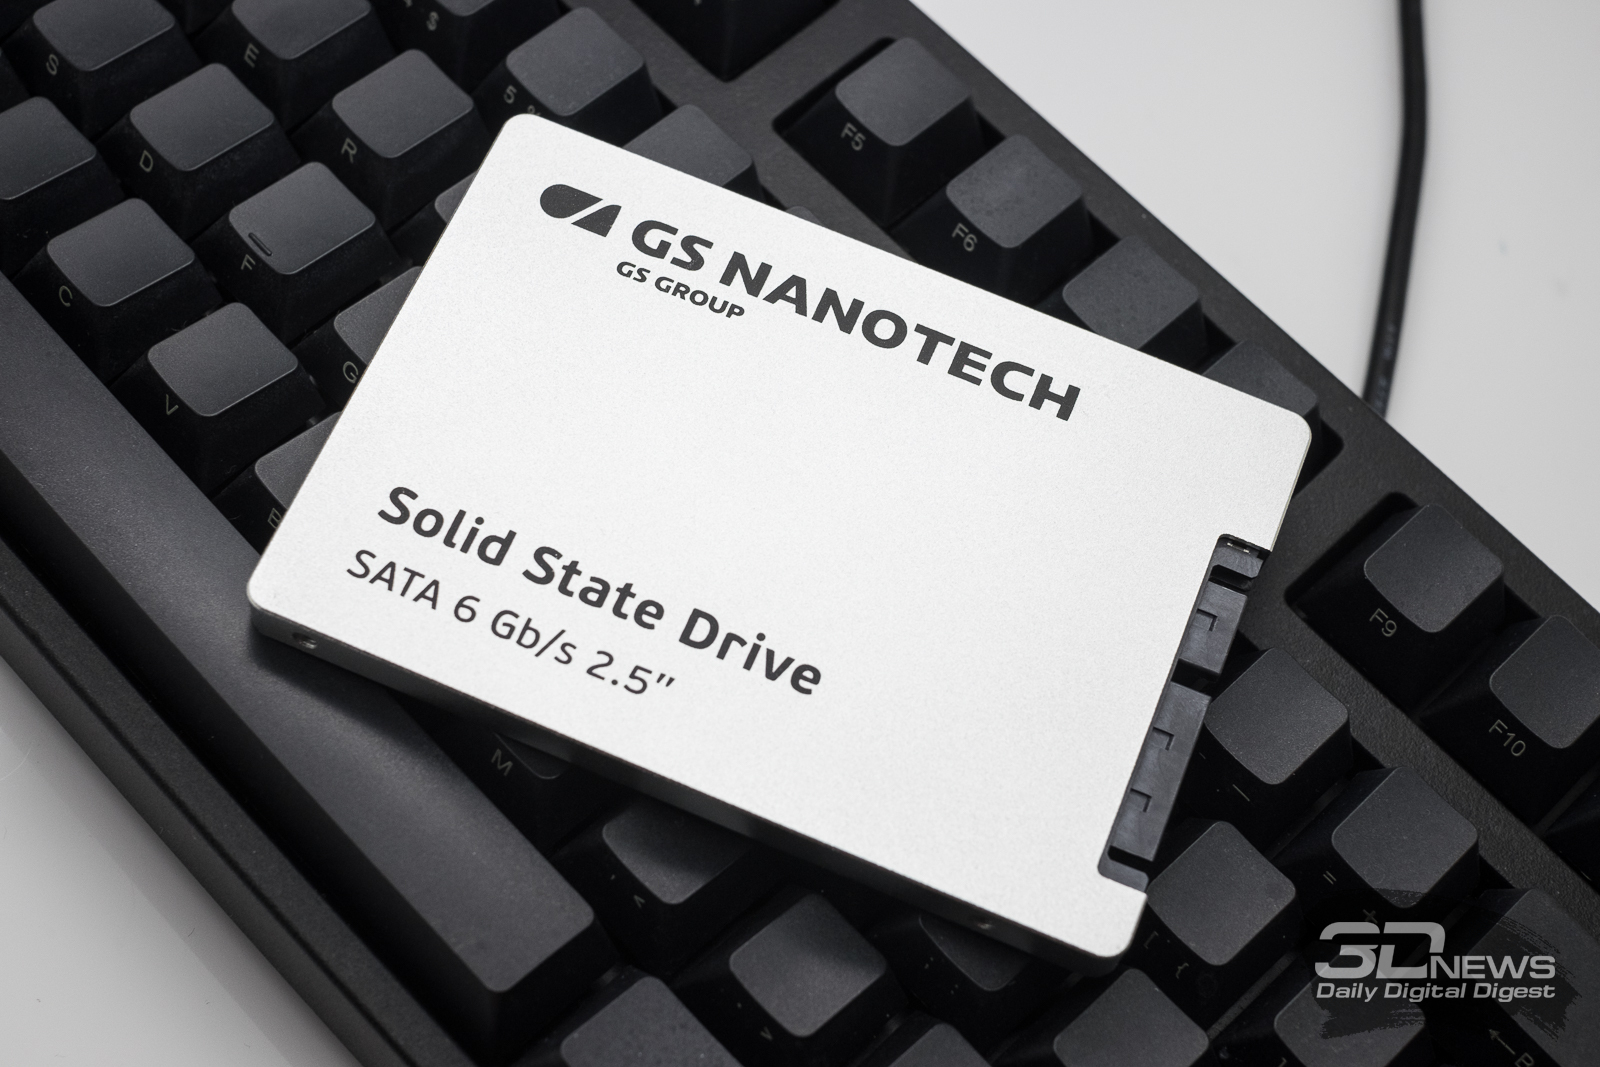 SSD по-русски: знакомимся с GS Nanotech – производителем твердотельных накопителей из города Гусев